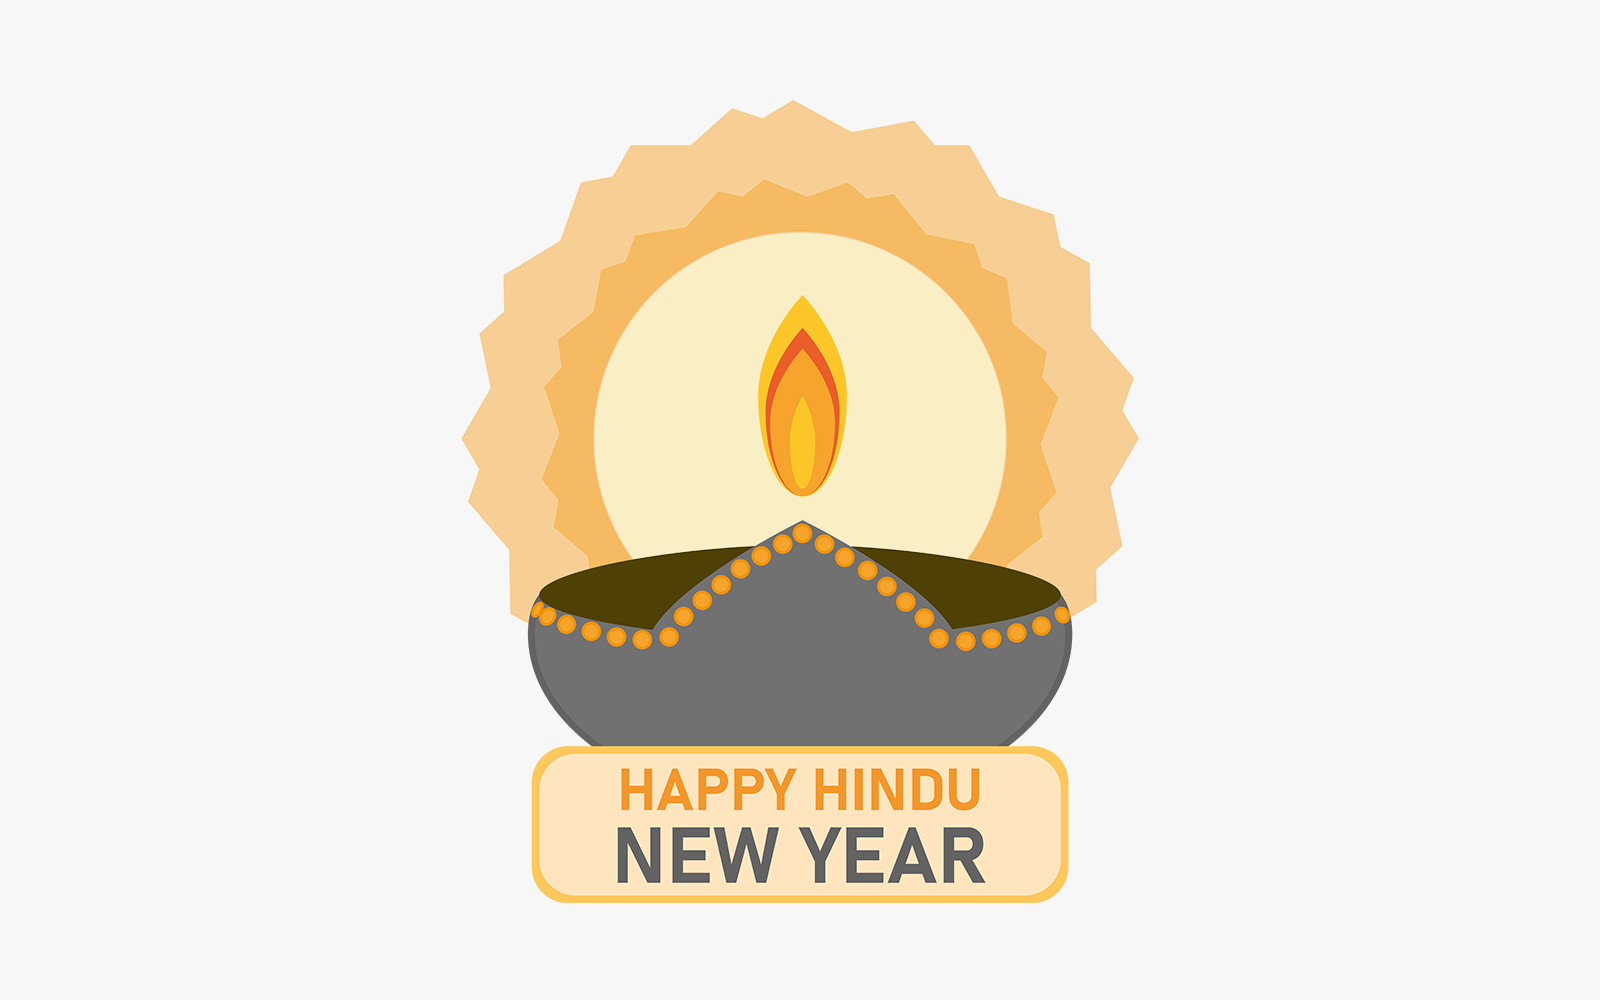 Happy Hindu New Year Design Vector